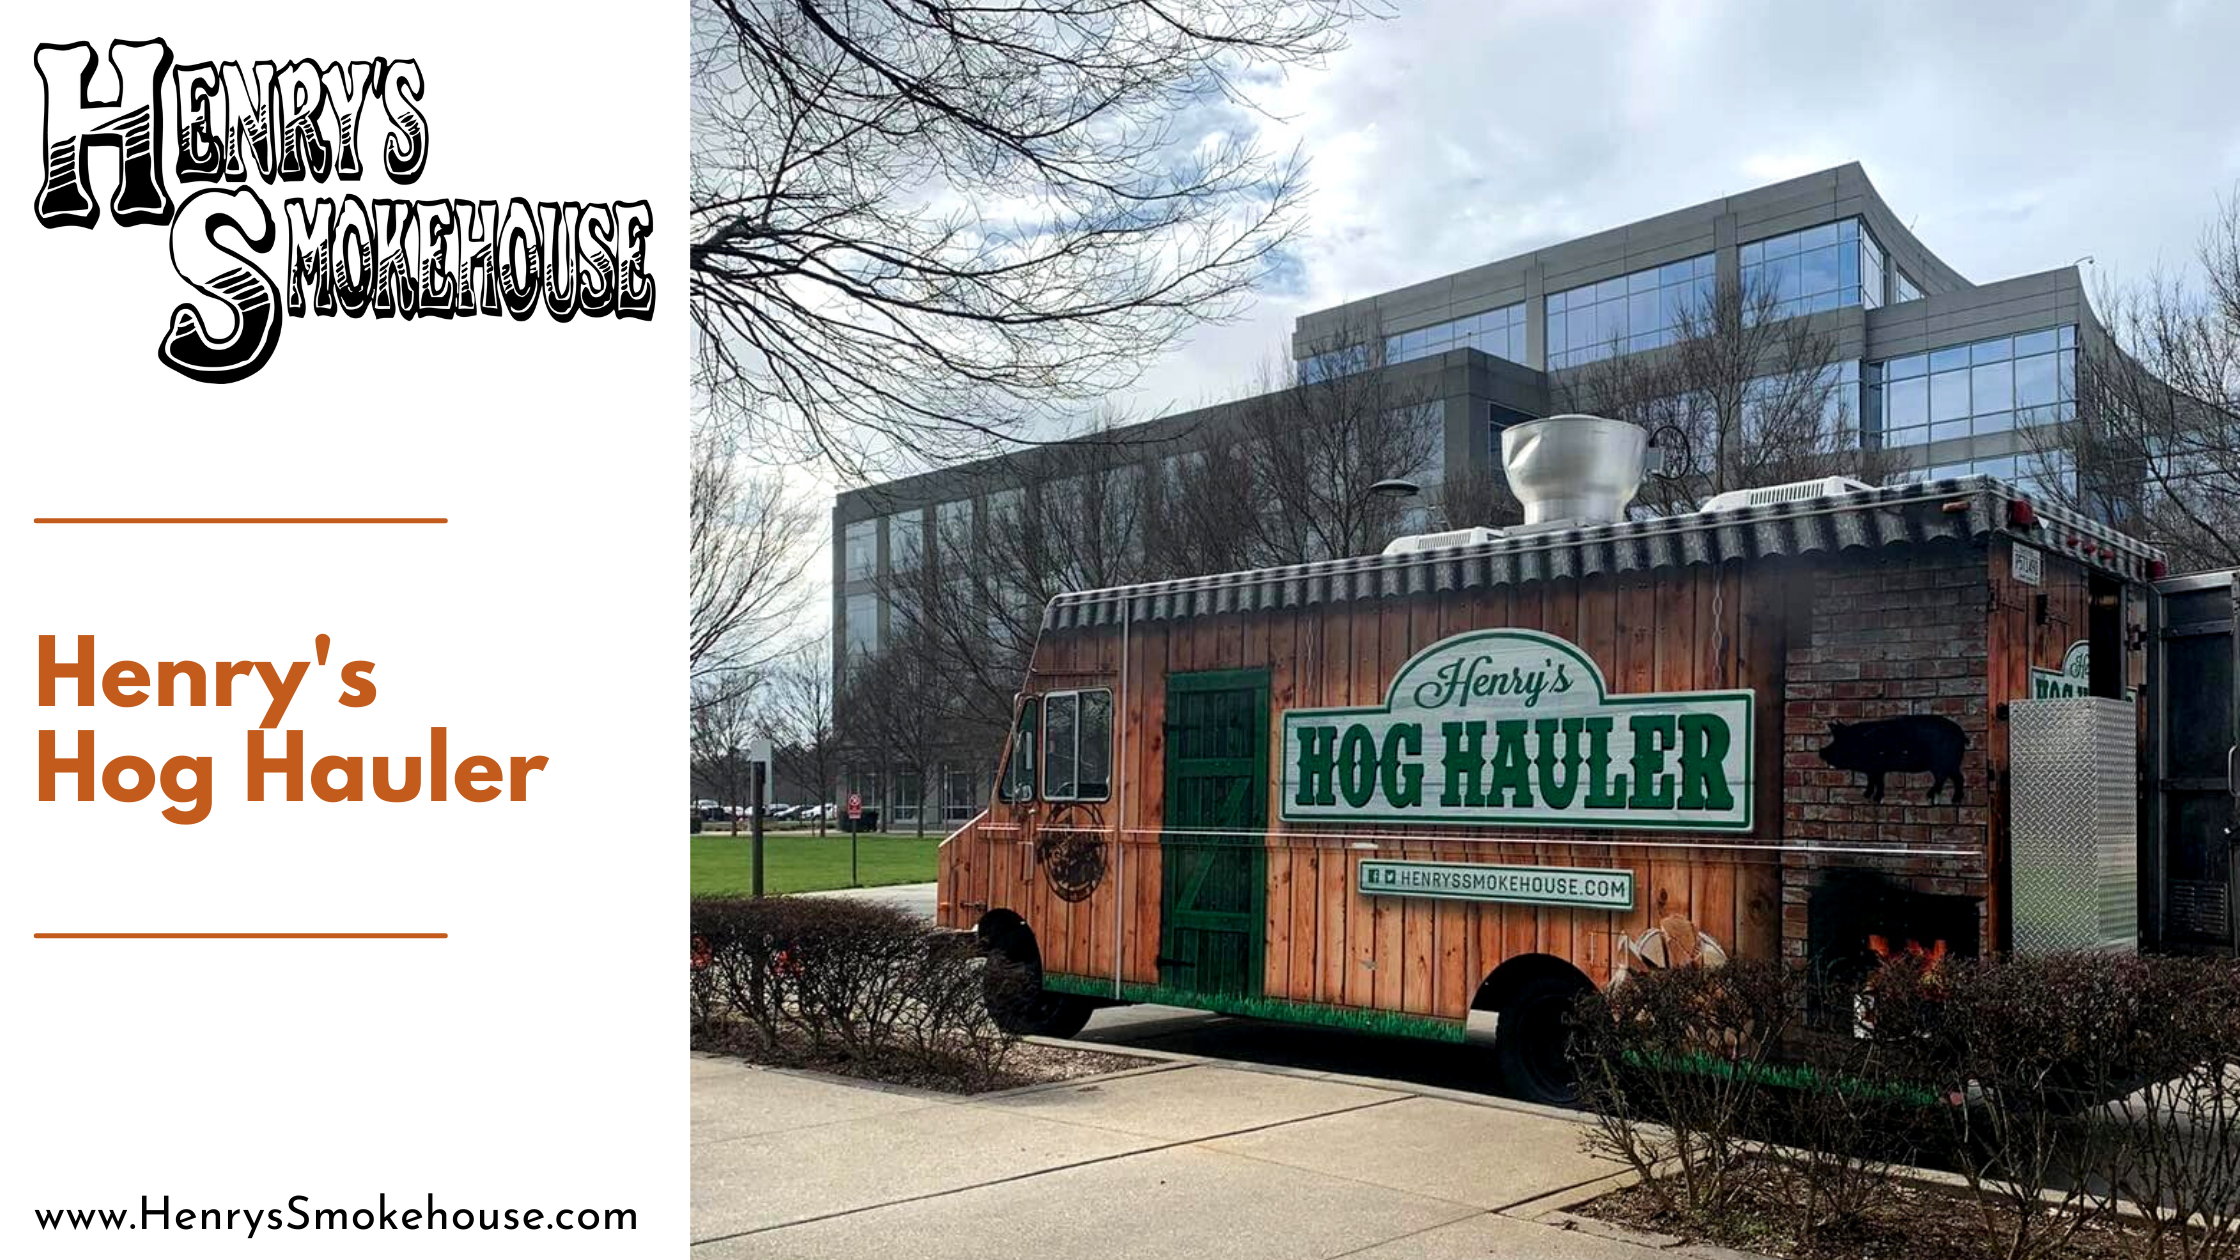 Henry’s Hog Hauler